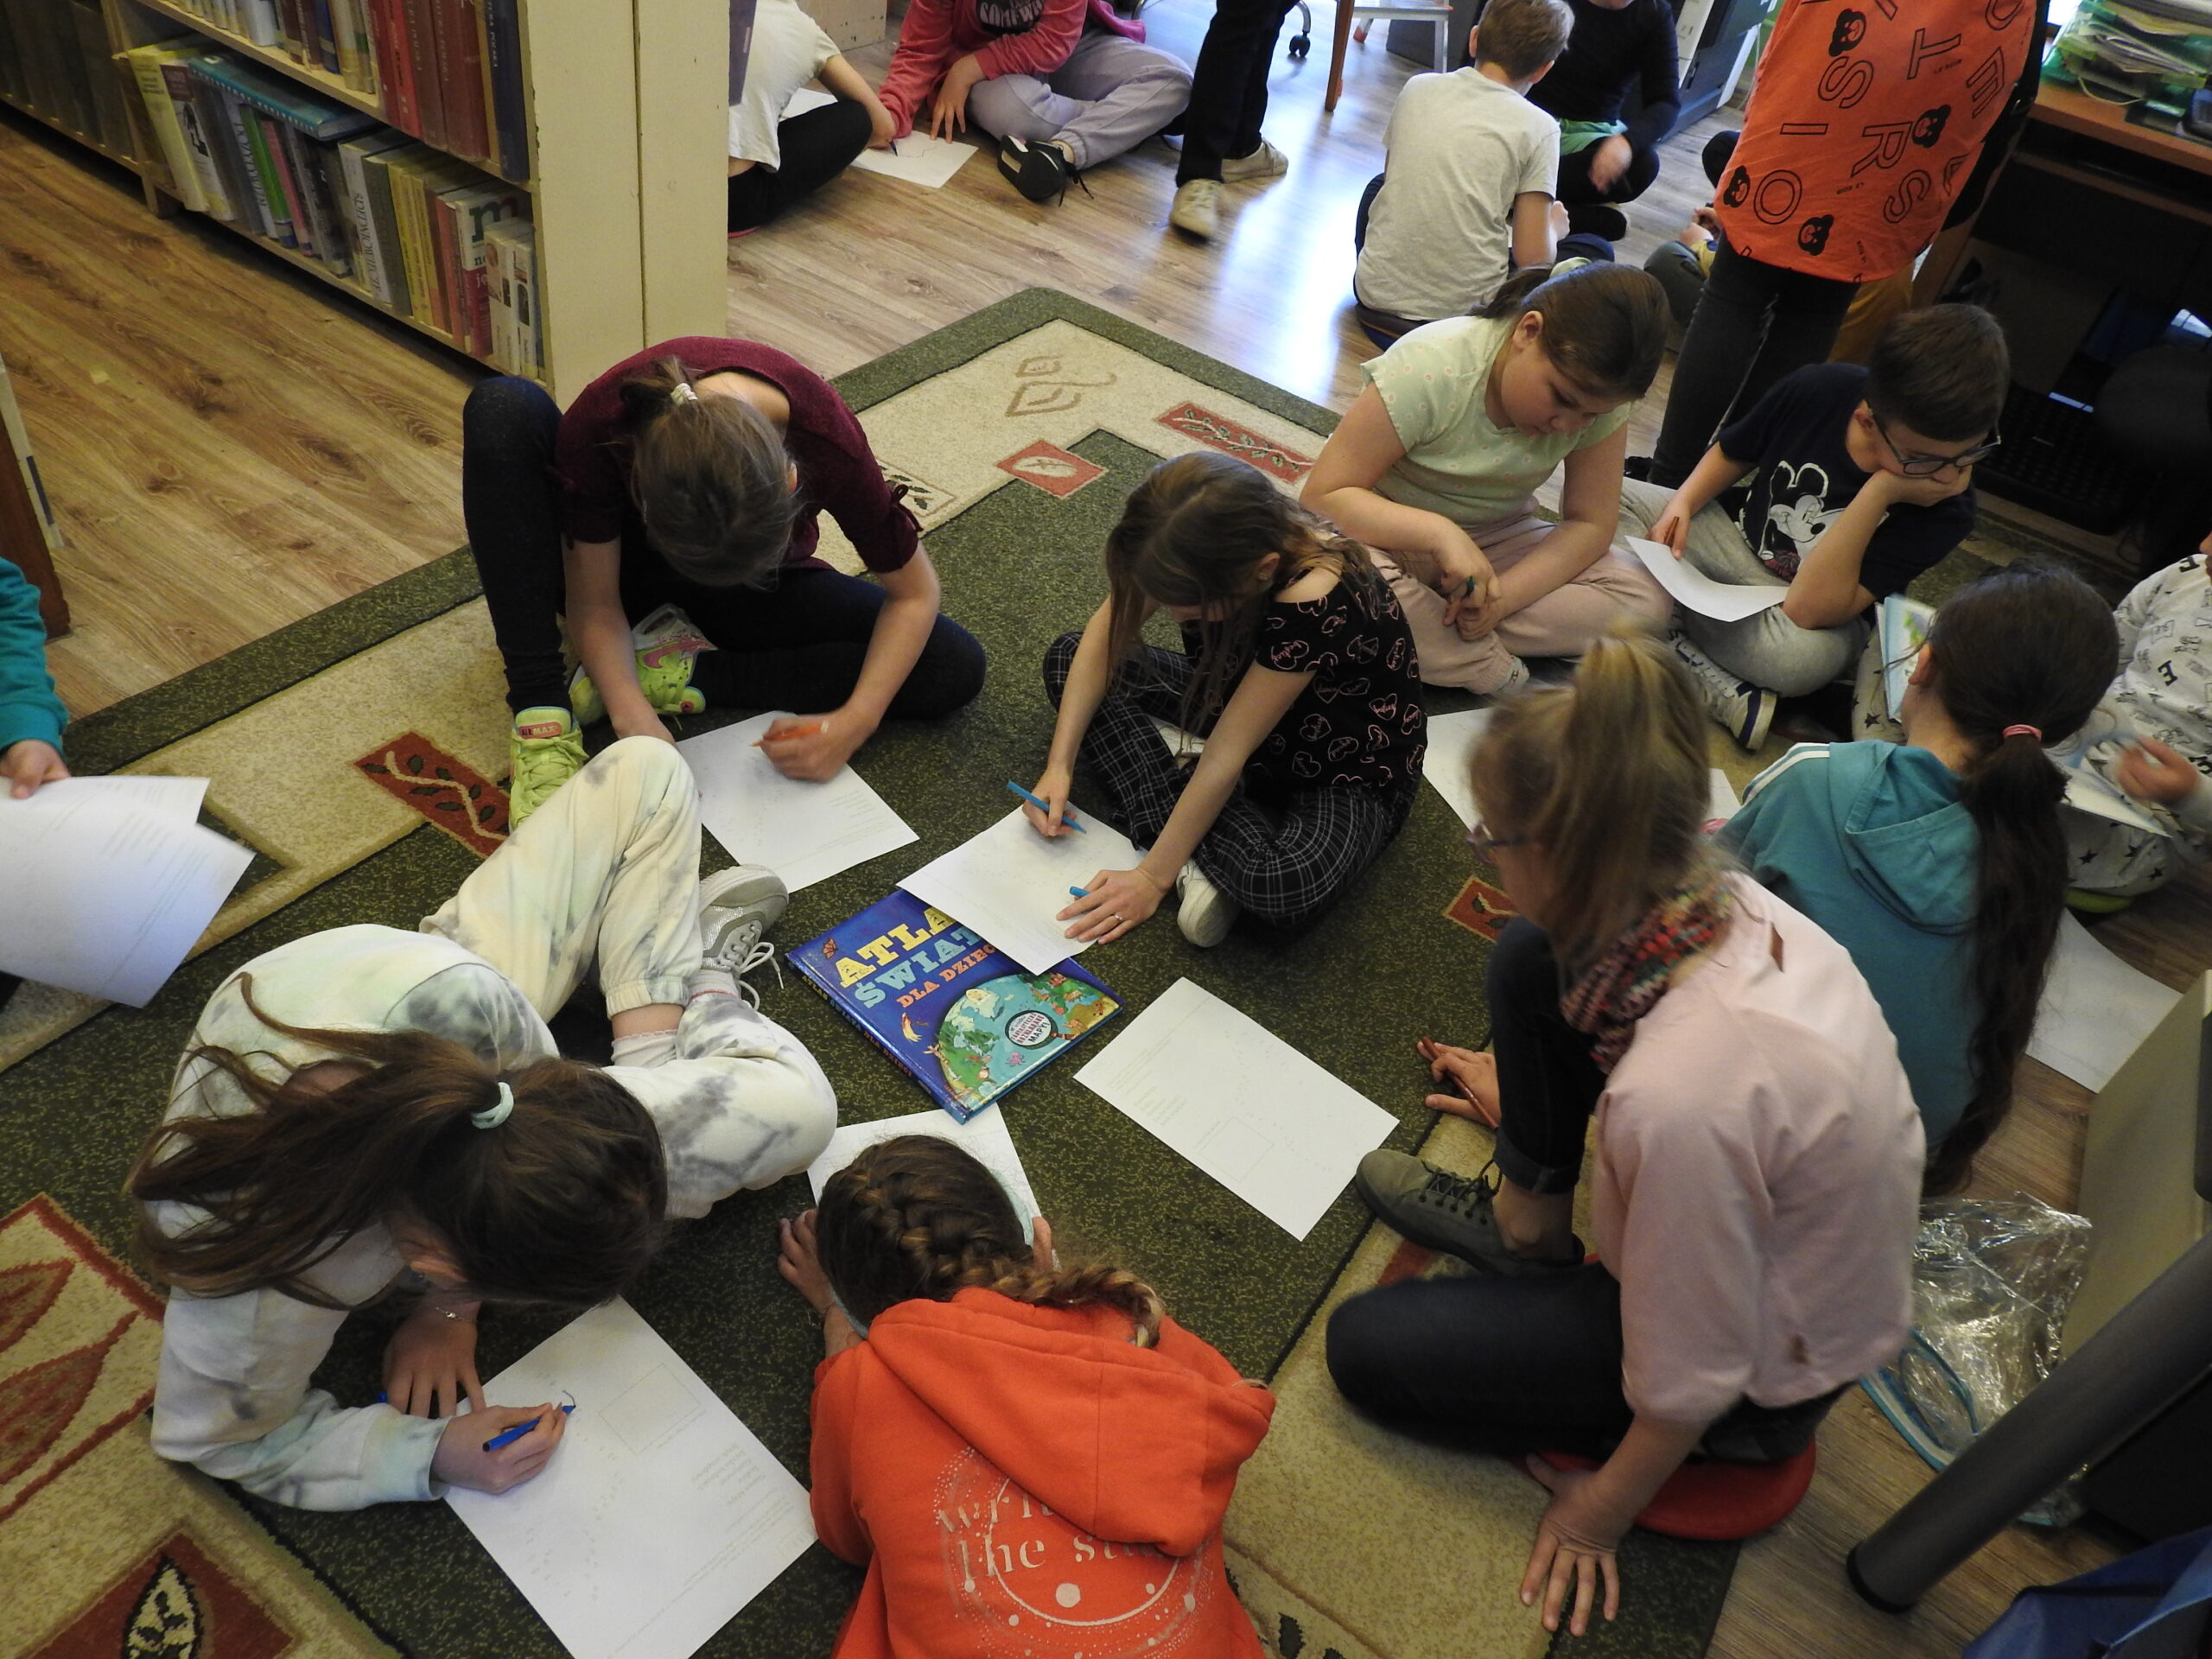 Grupa dzieci siedzi na dywanie. Każdy ma jedną kartkę A4. Część osób na niej pisze. Pomiędzy dziećmi leży Atlas świata dla dzieci.